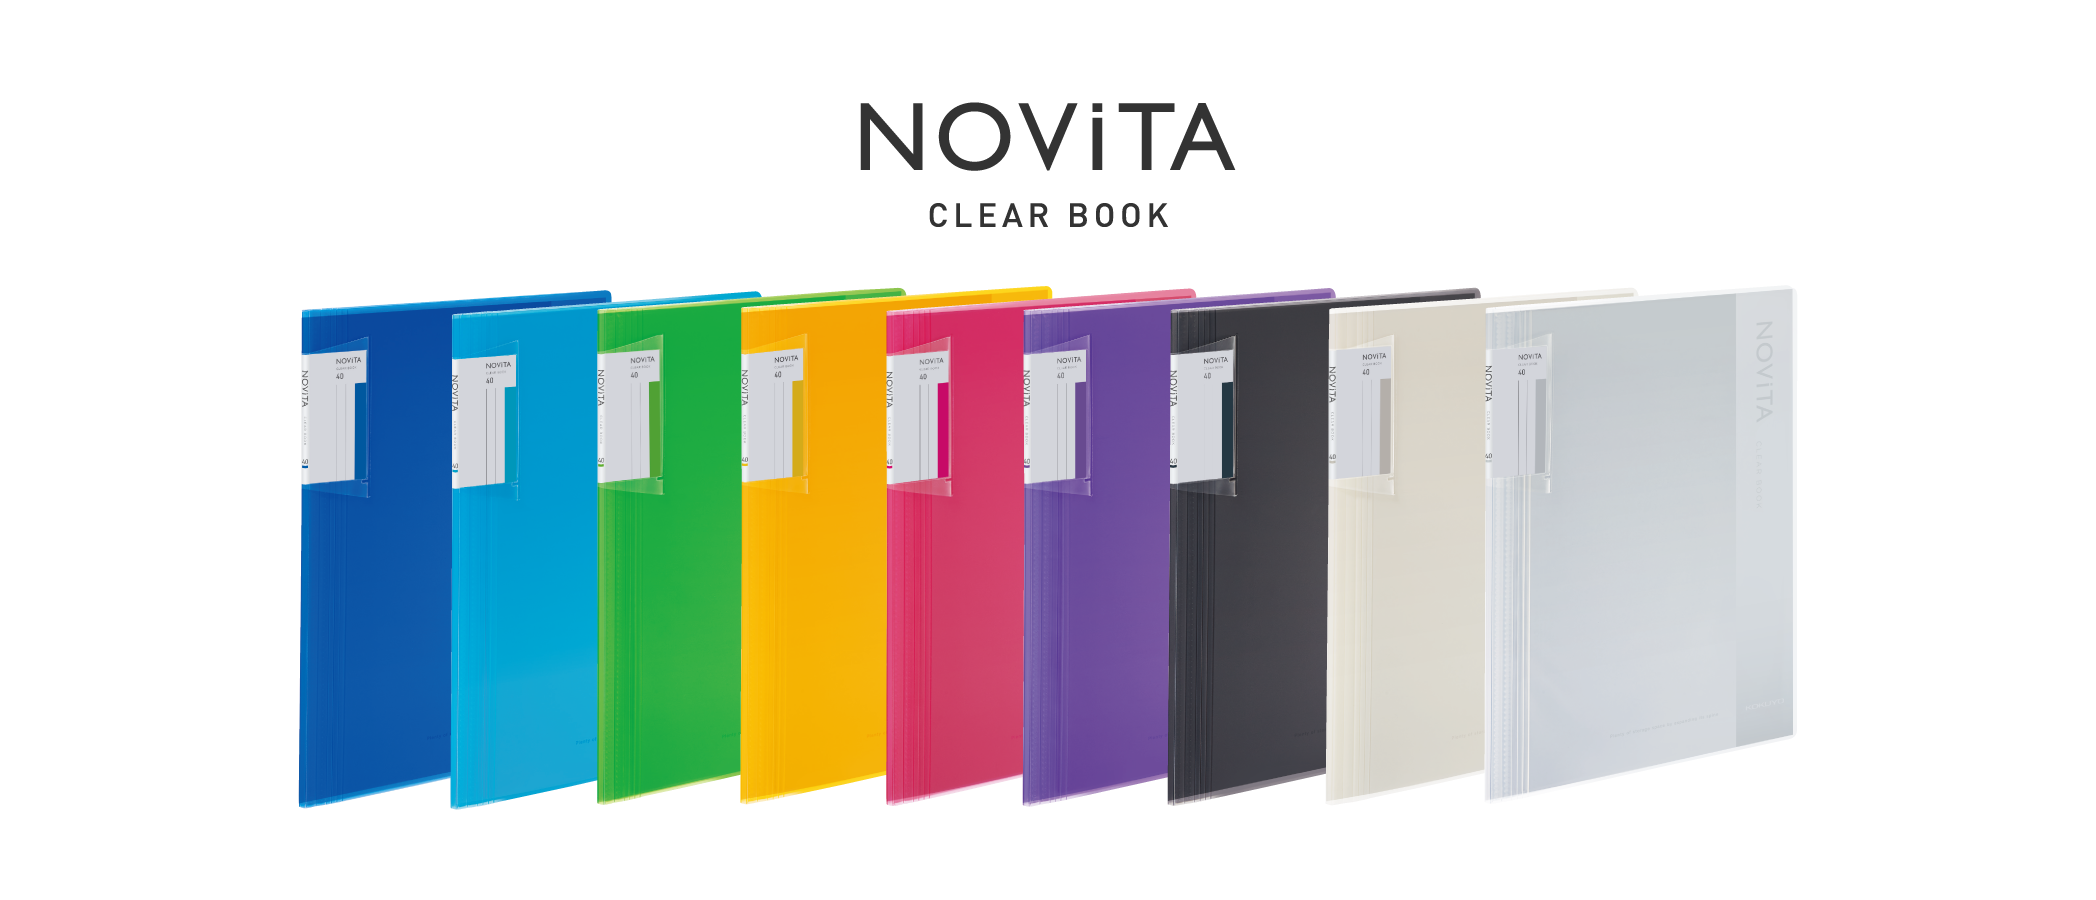 Clear book NOVITA